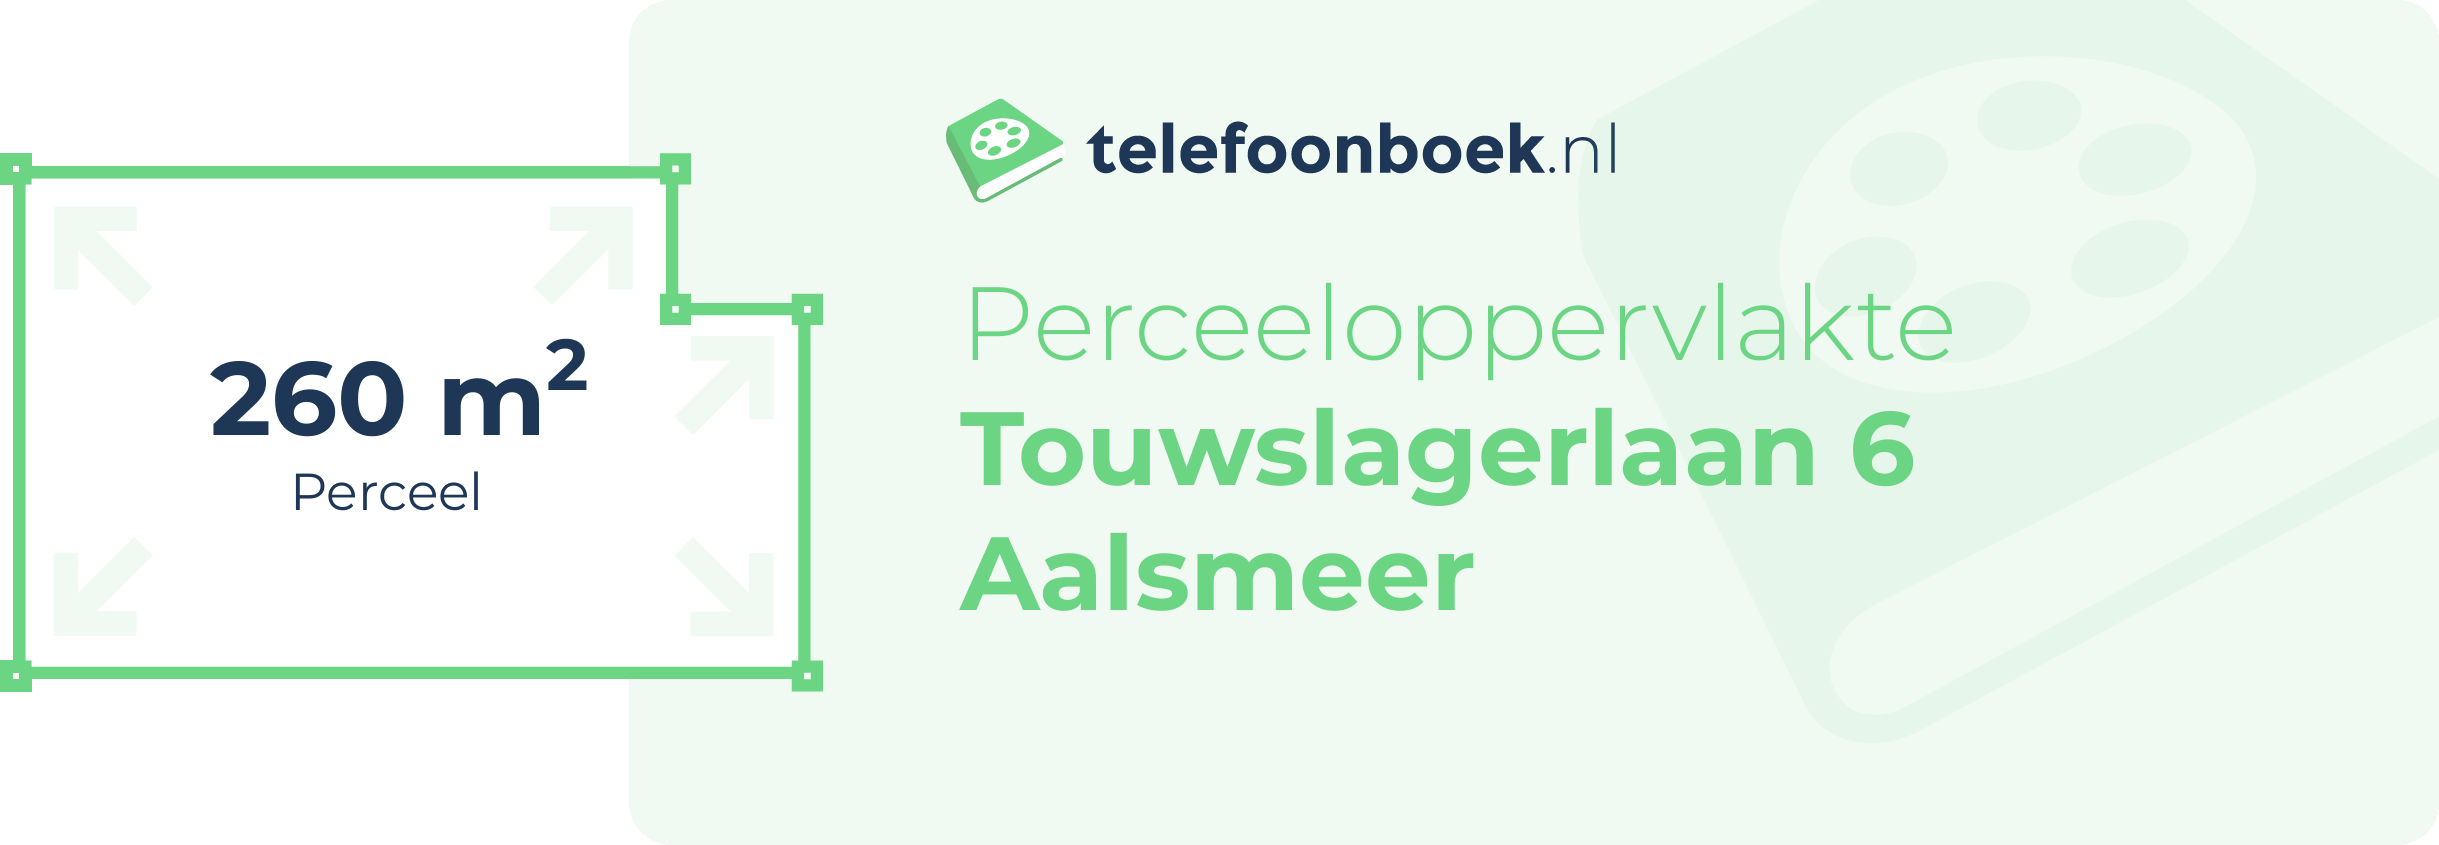 Perceeloppervlakte Touwslagerlaan 6 Aalsmeer